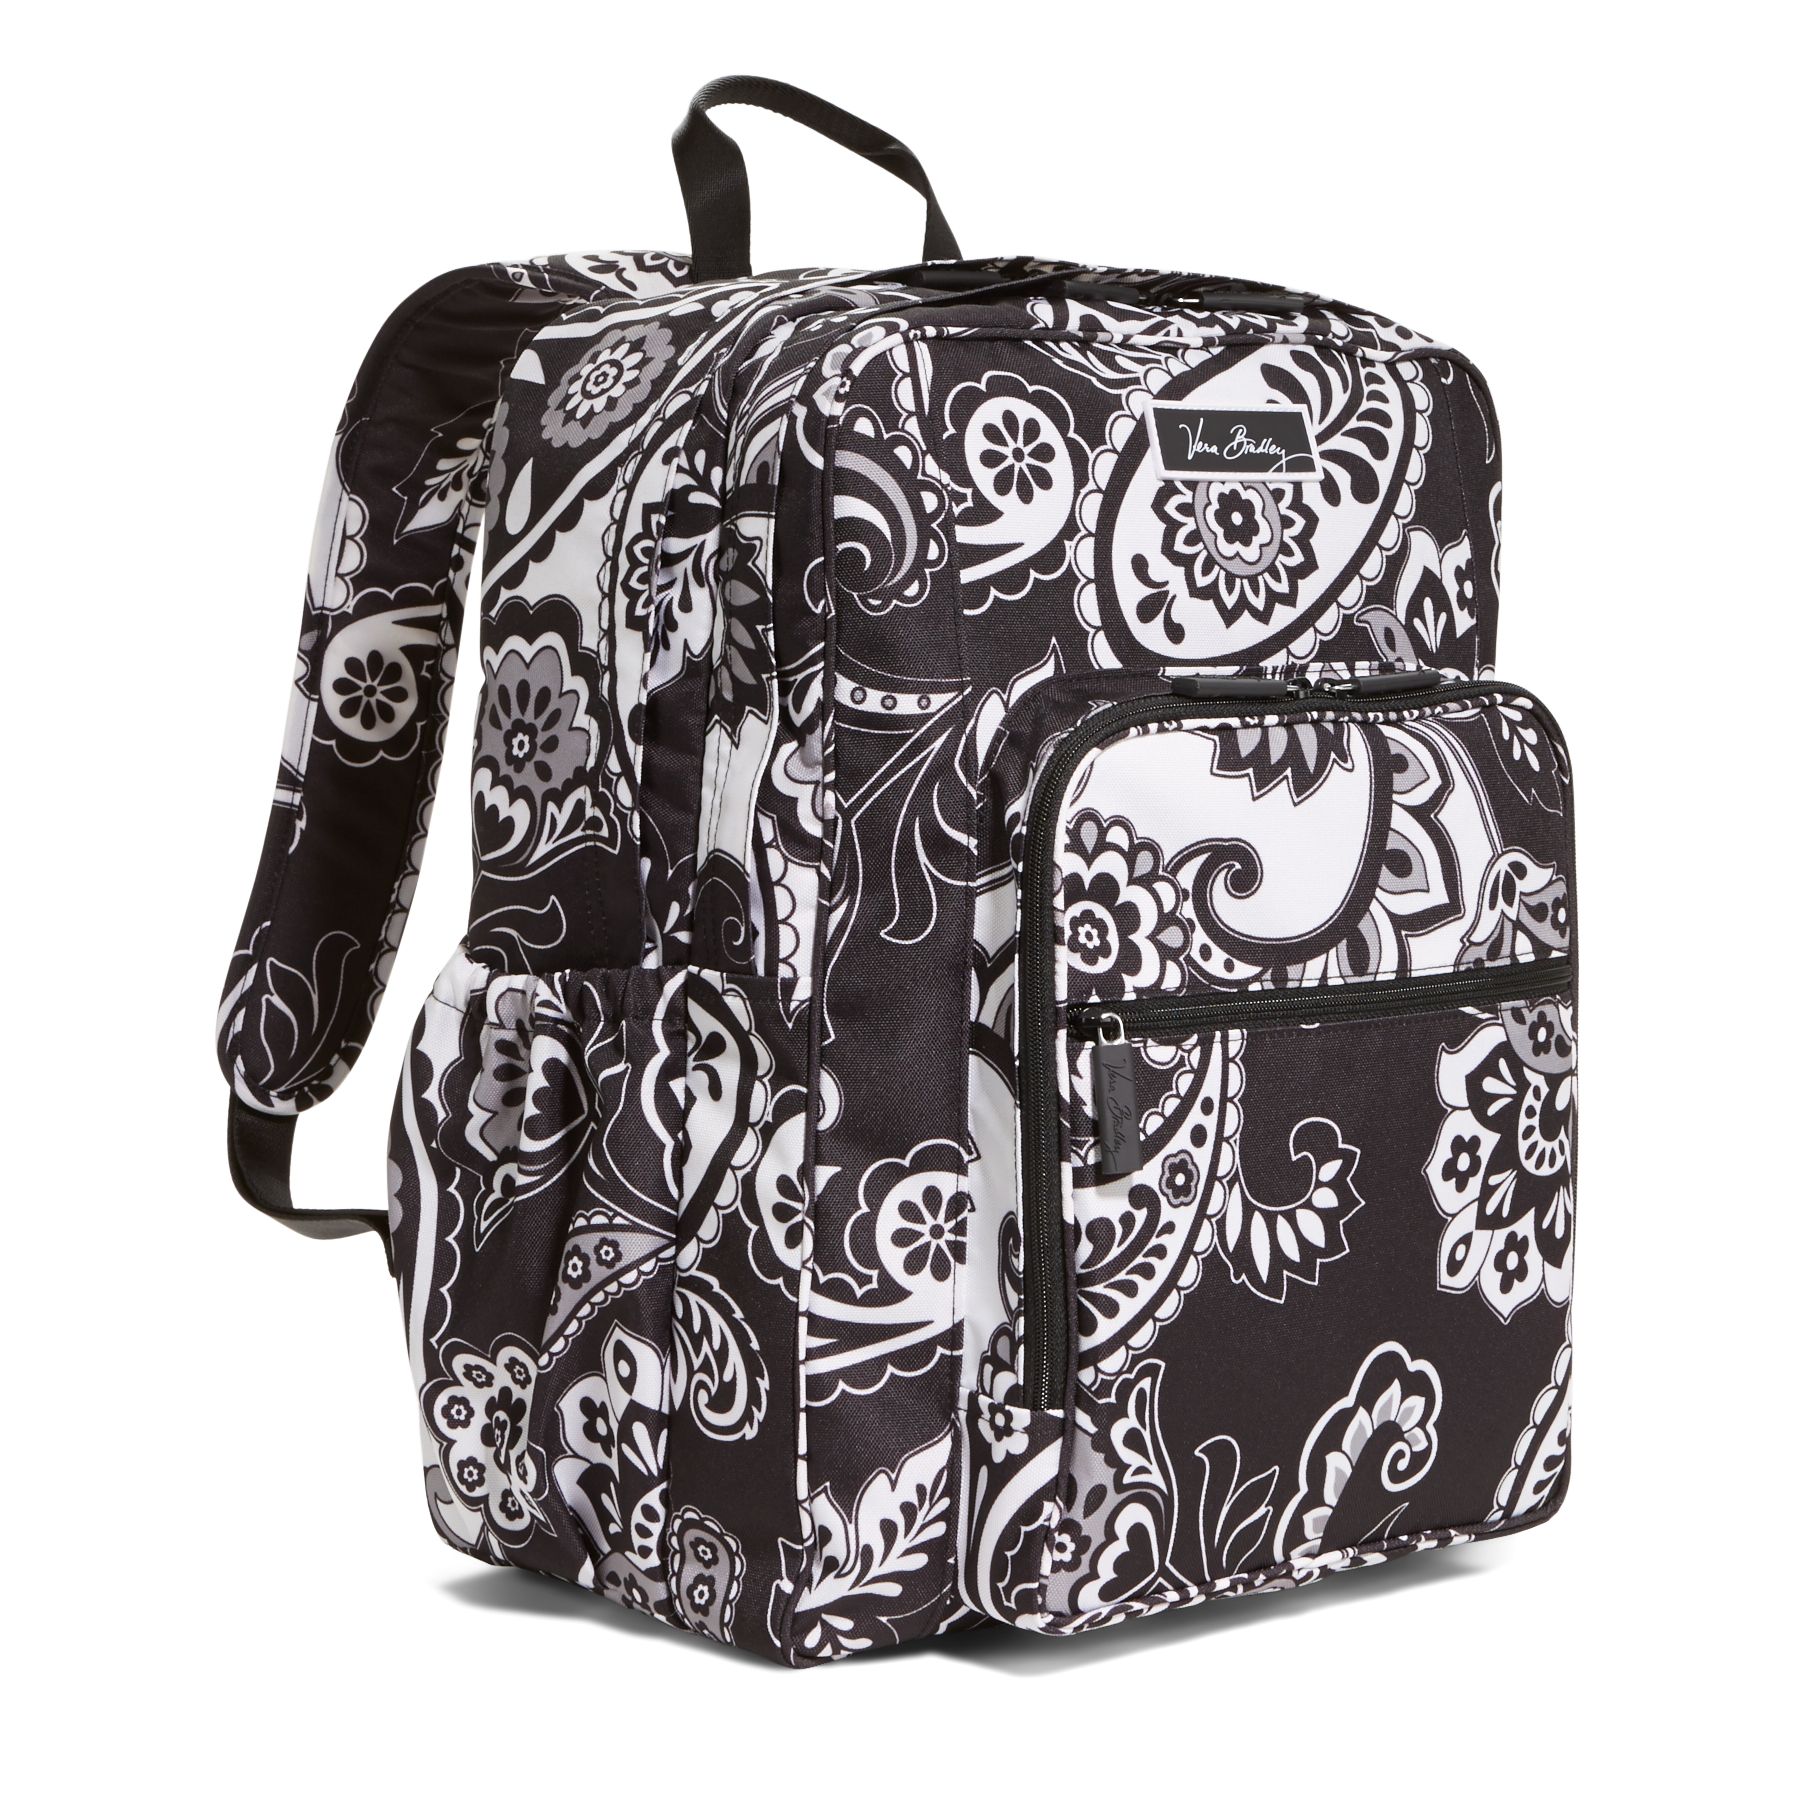 Vera Bradley Lighten Up Large Backpack | eBay